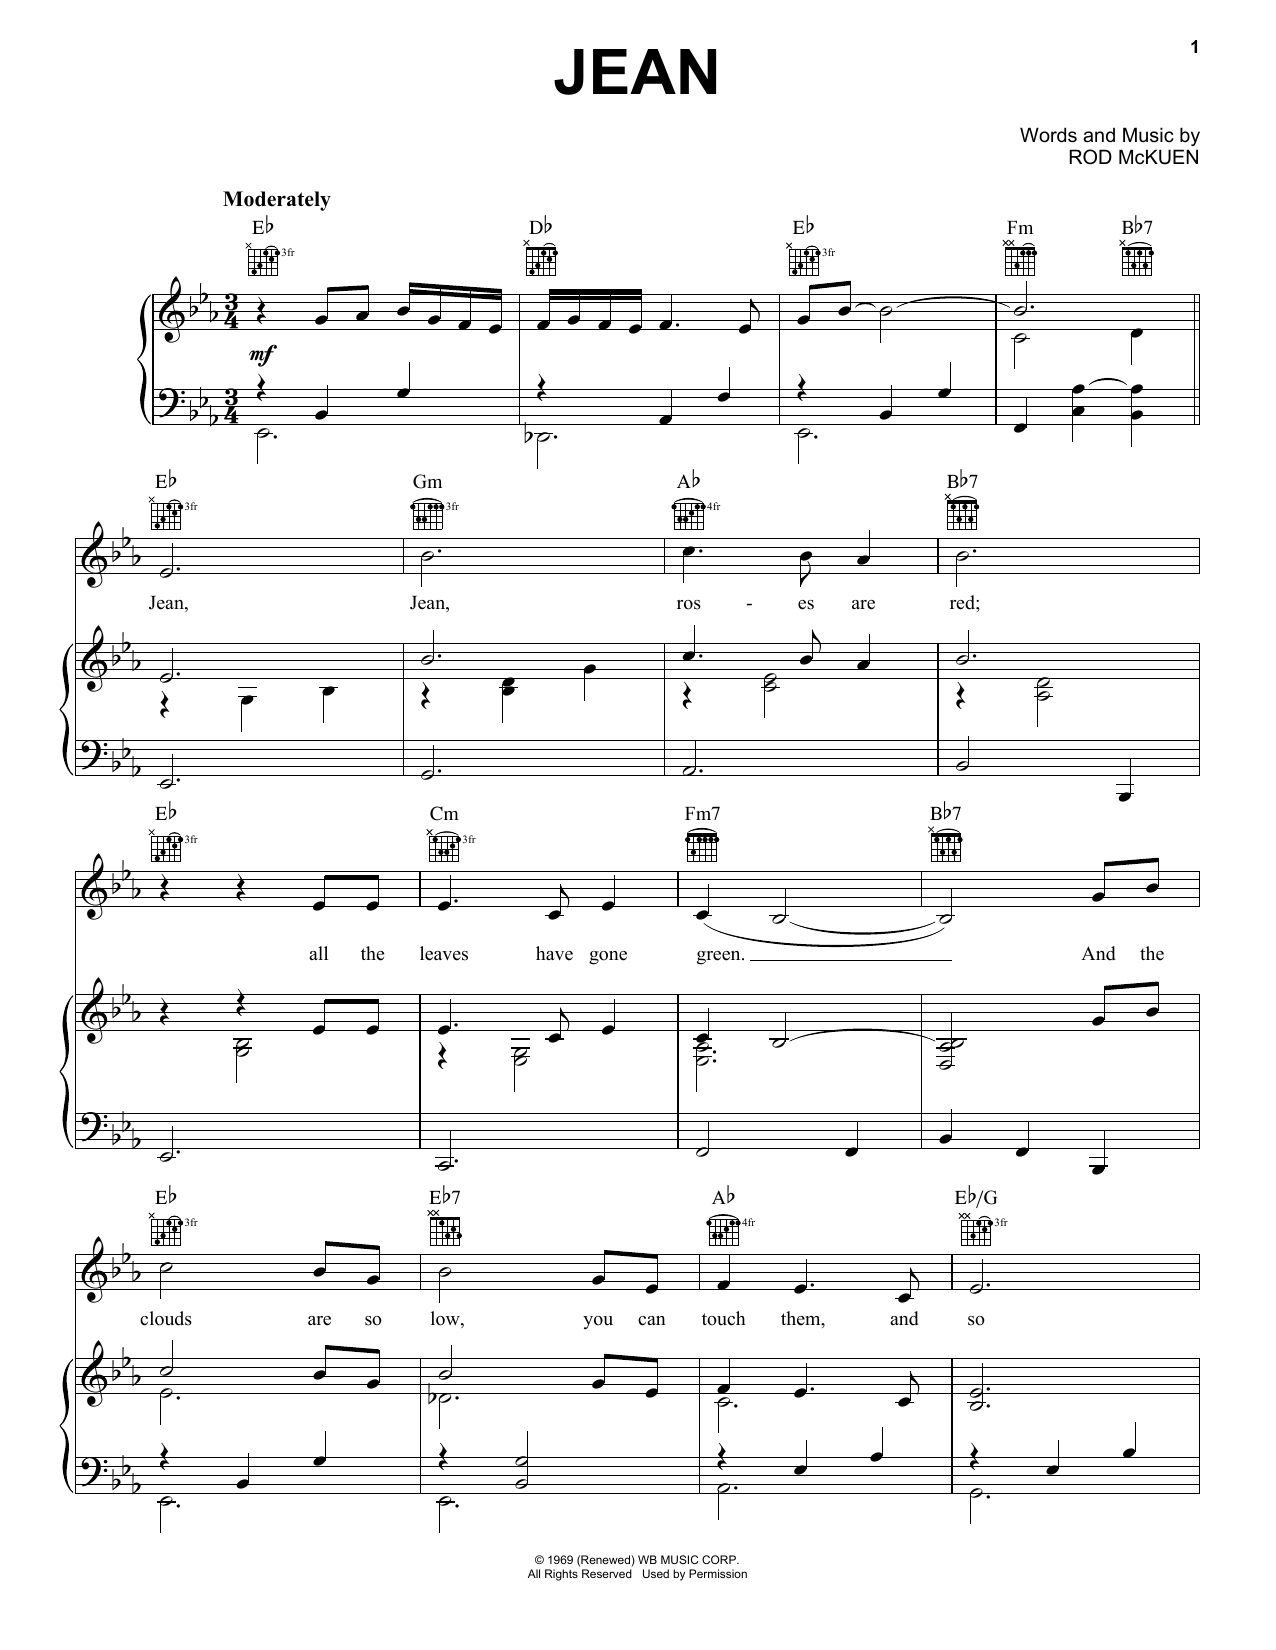 Oliver Jean Sheet Music Notes & Chords for Ukulele - Download or Print PDF